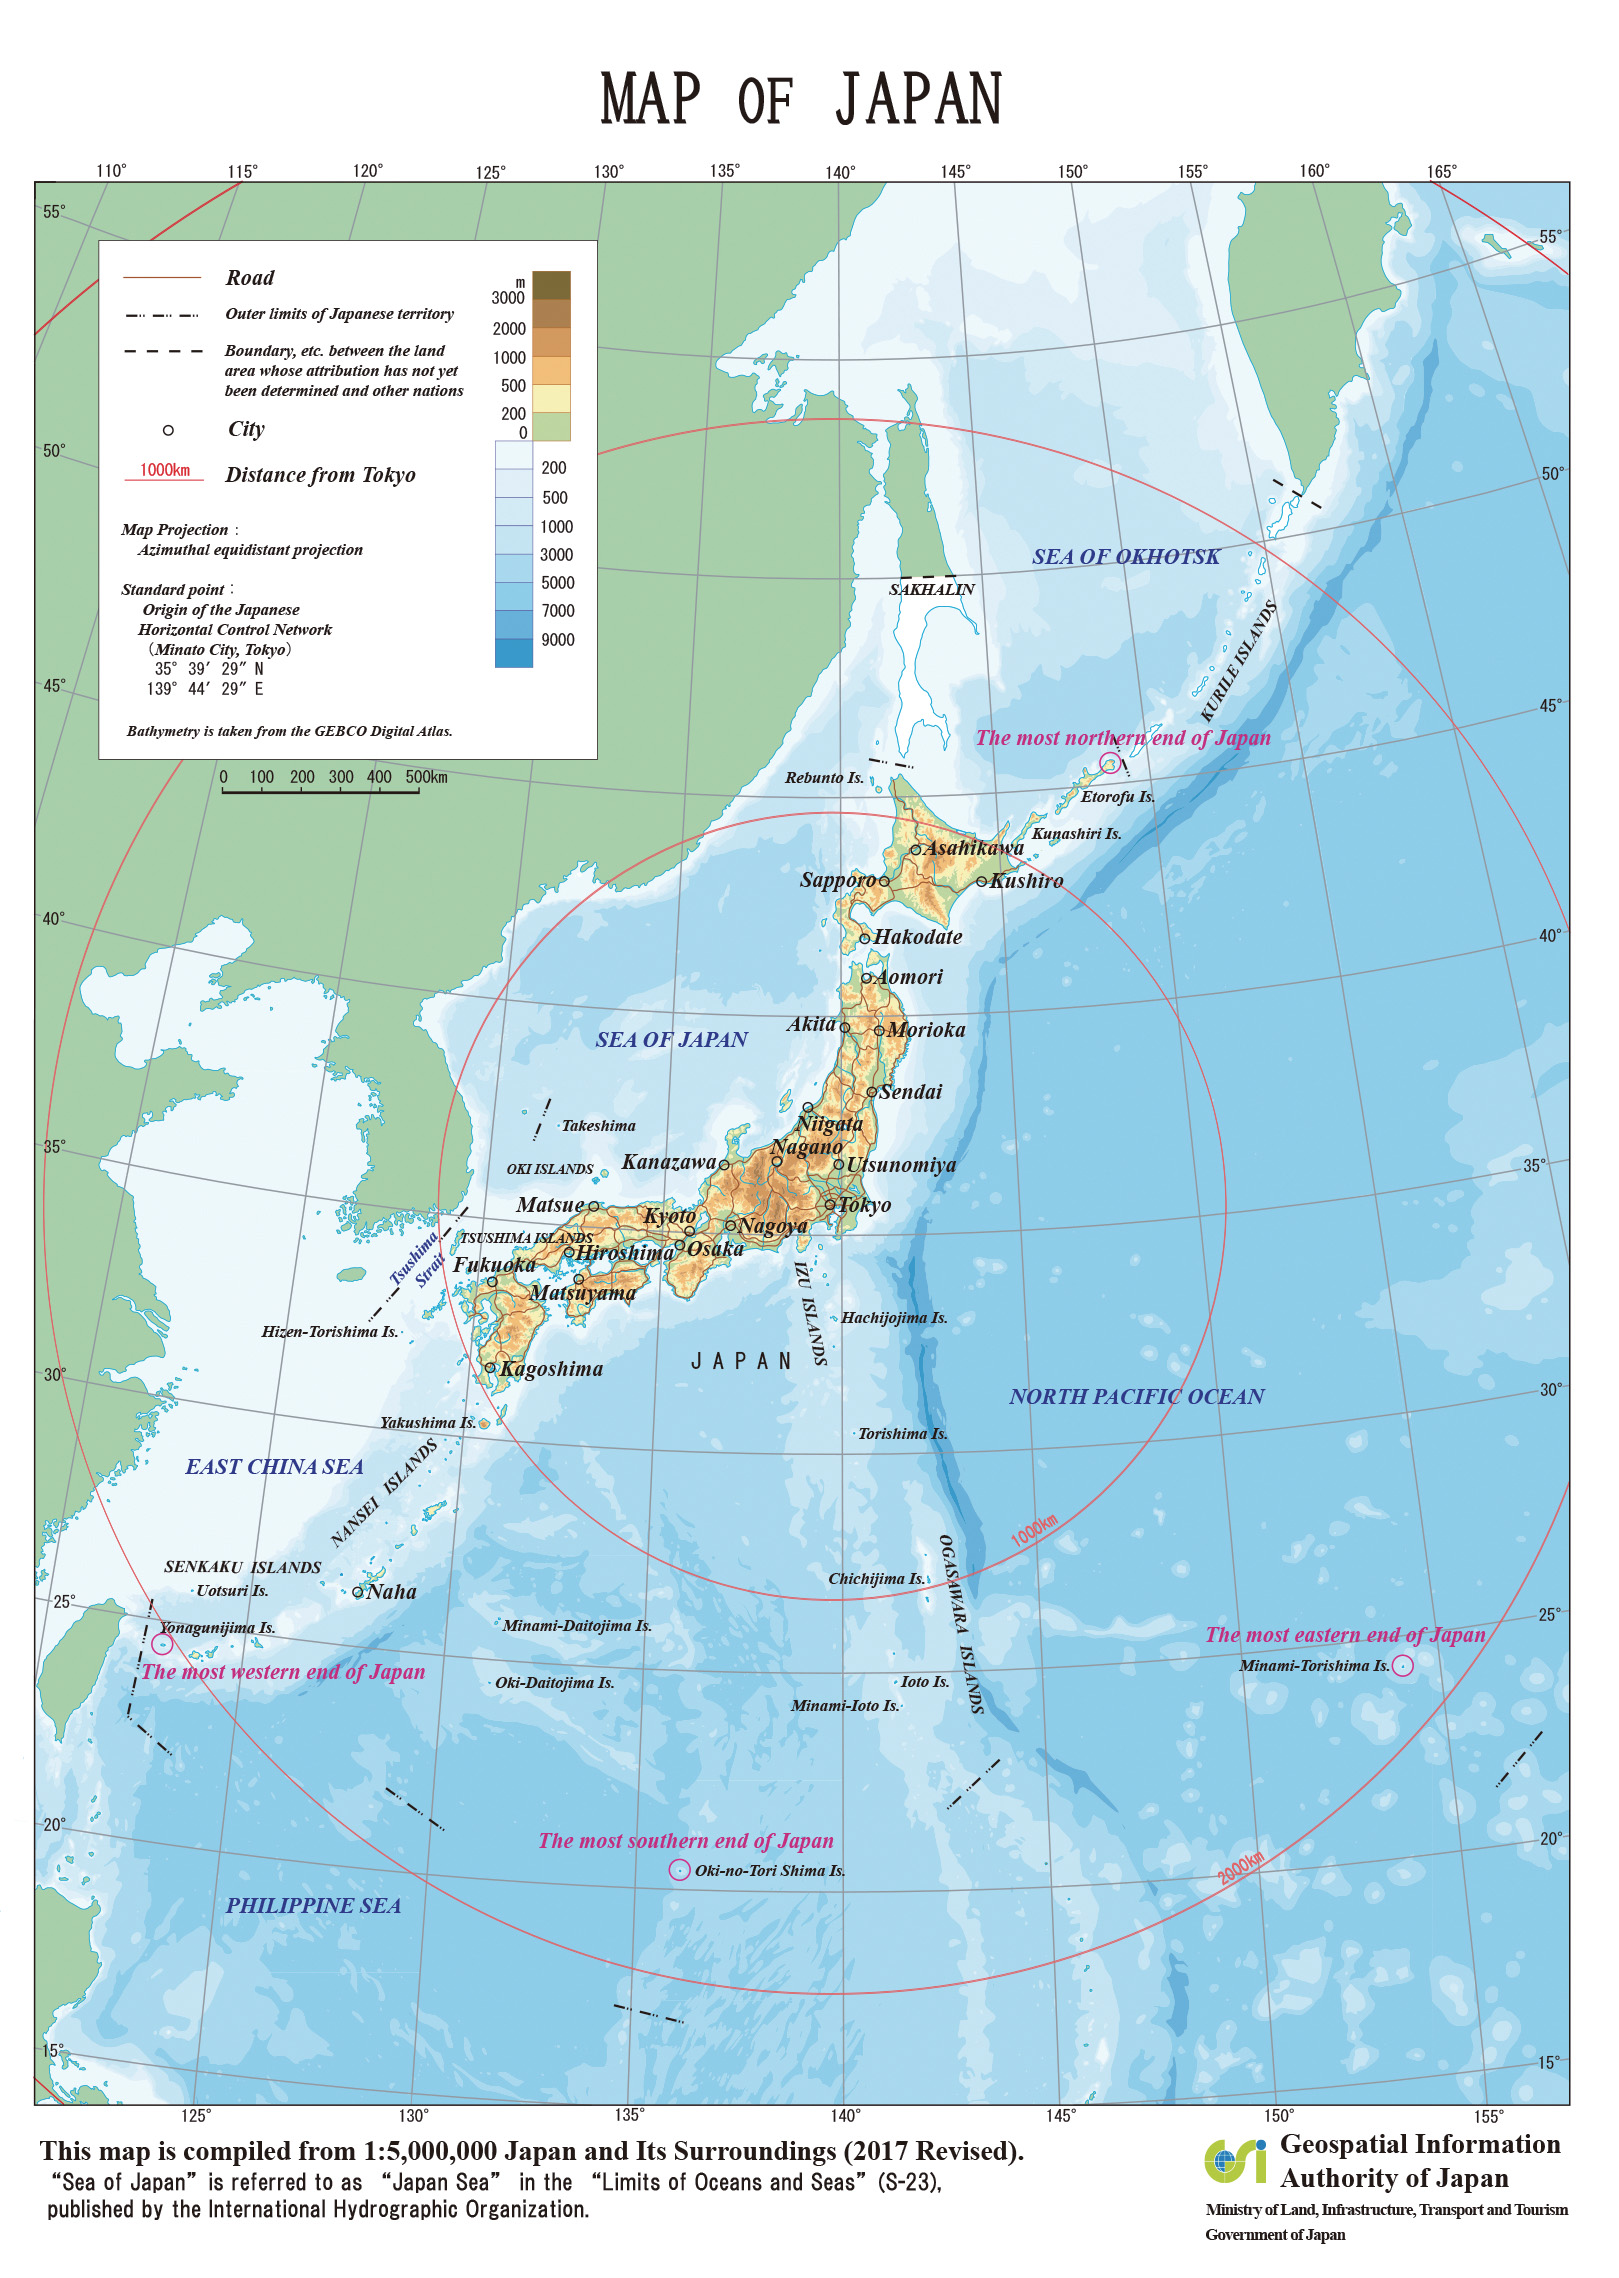 Eine offizielle Karte mit den Grenzpunkten Japans.